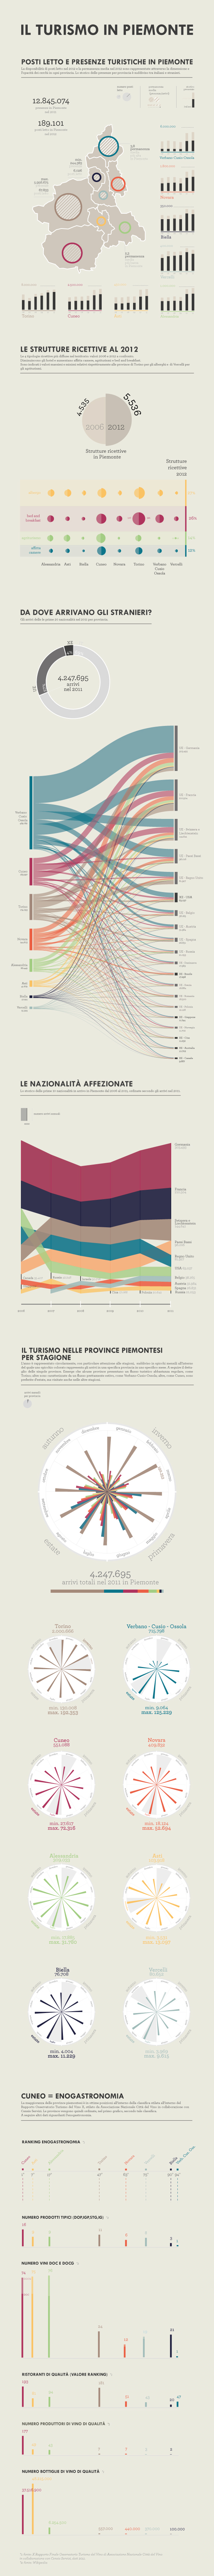 data visualization piemonte infografica stagioni enogastronomia Turismo